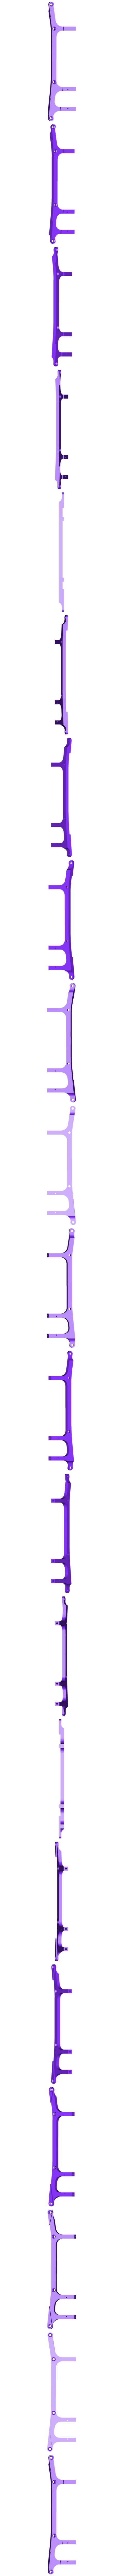 Chassis04-belt-24mm.STL Download free STL file Lynx - Fully 3D-printable 1/10 4wd buggy • 3D printable design, tahustvedt